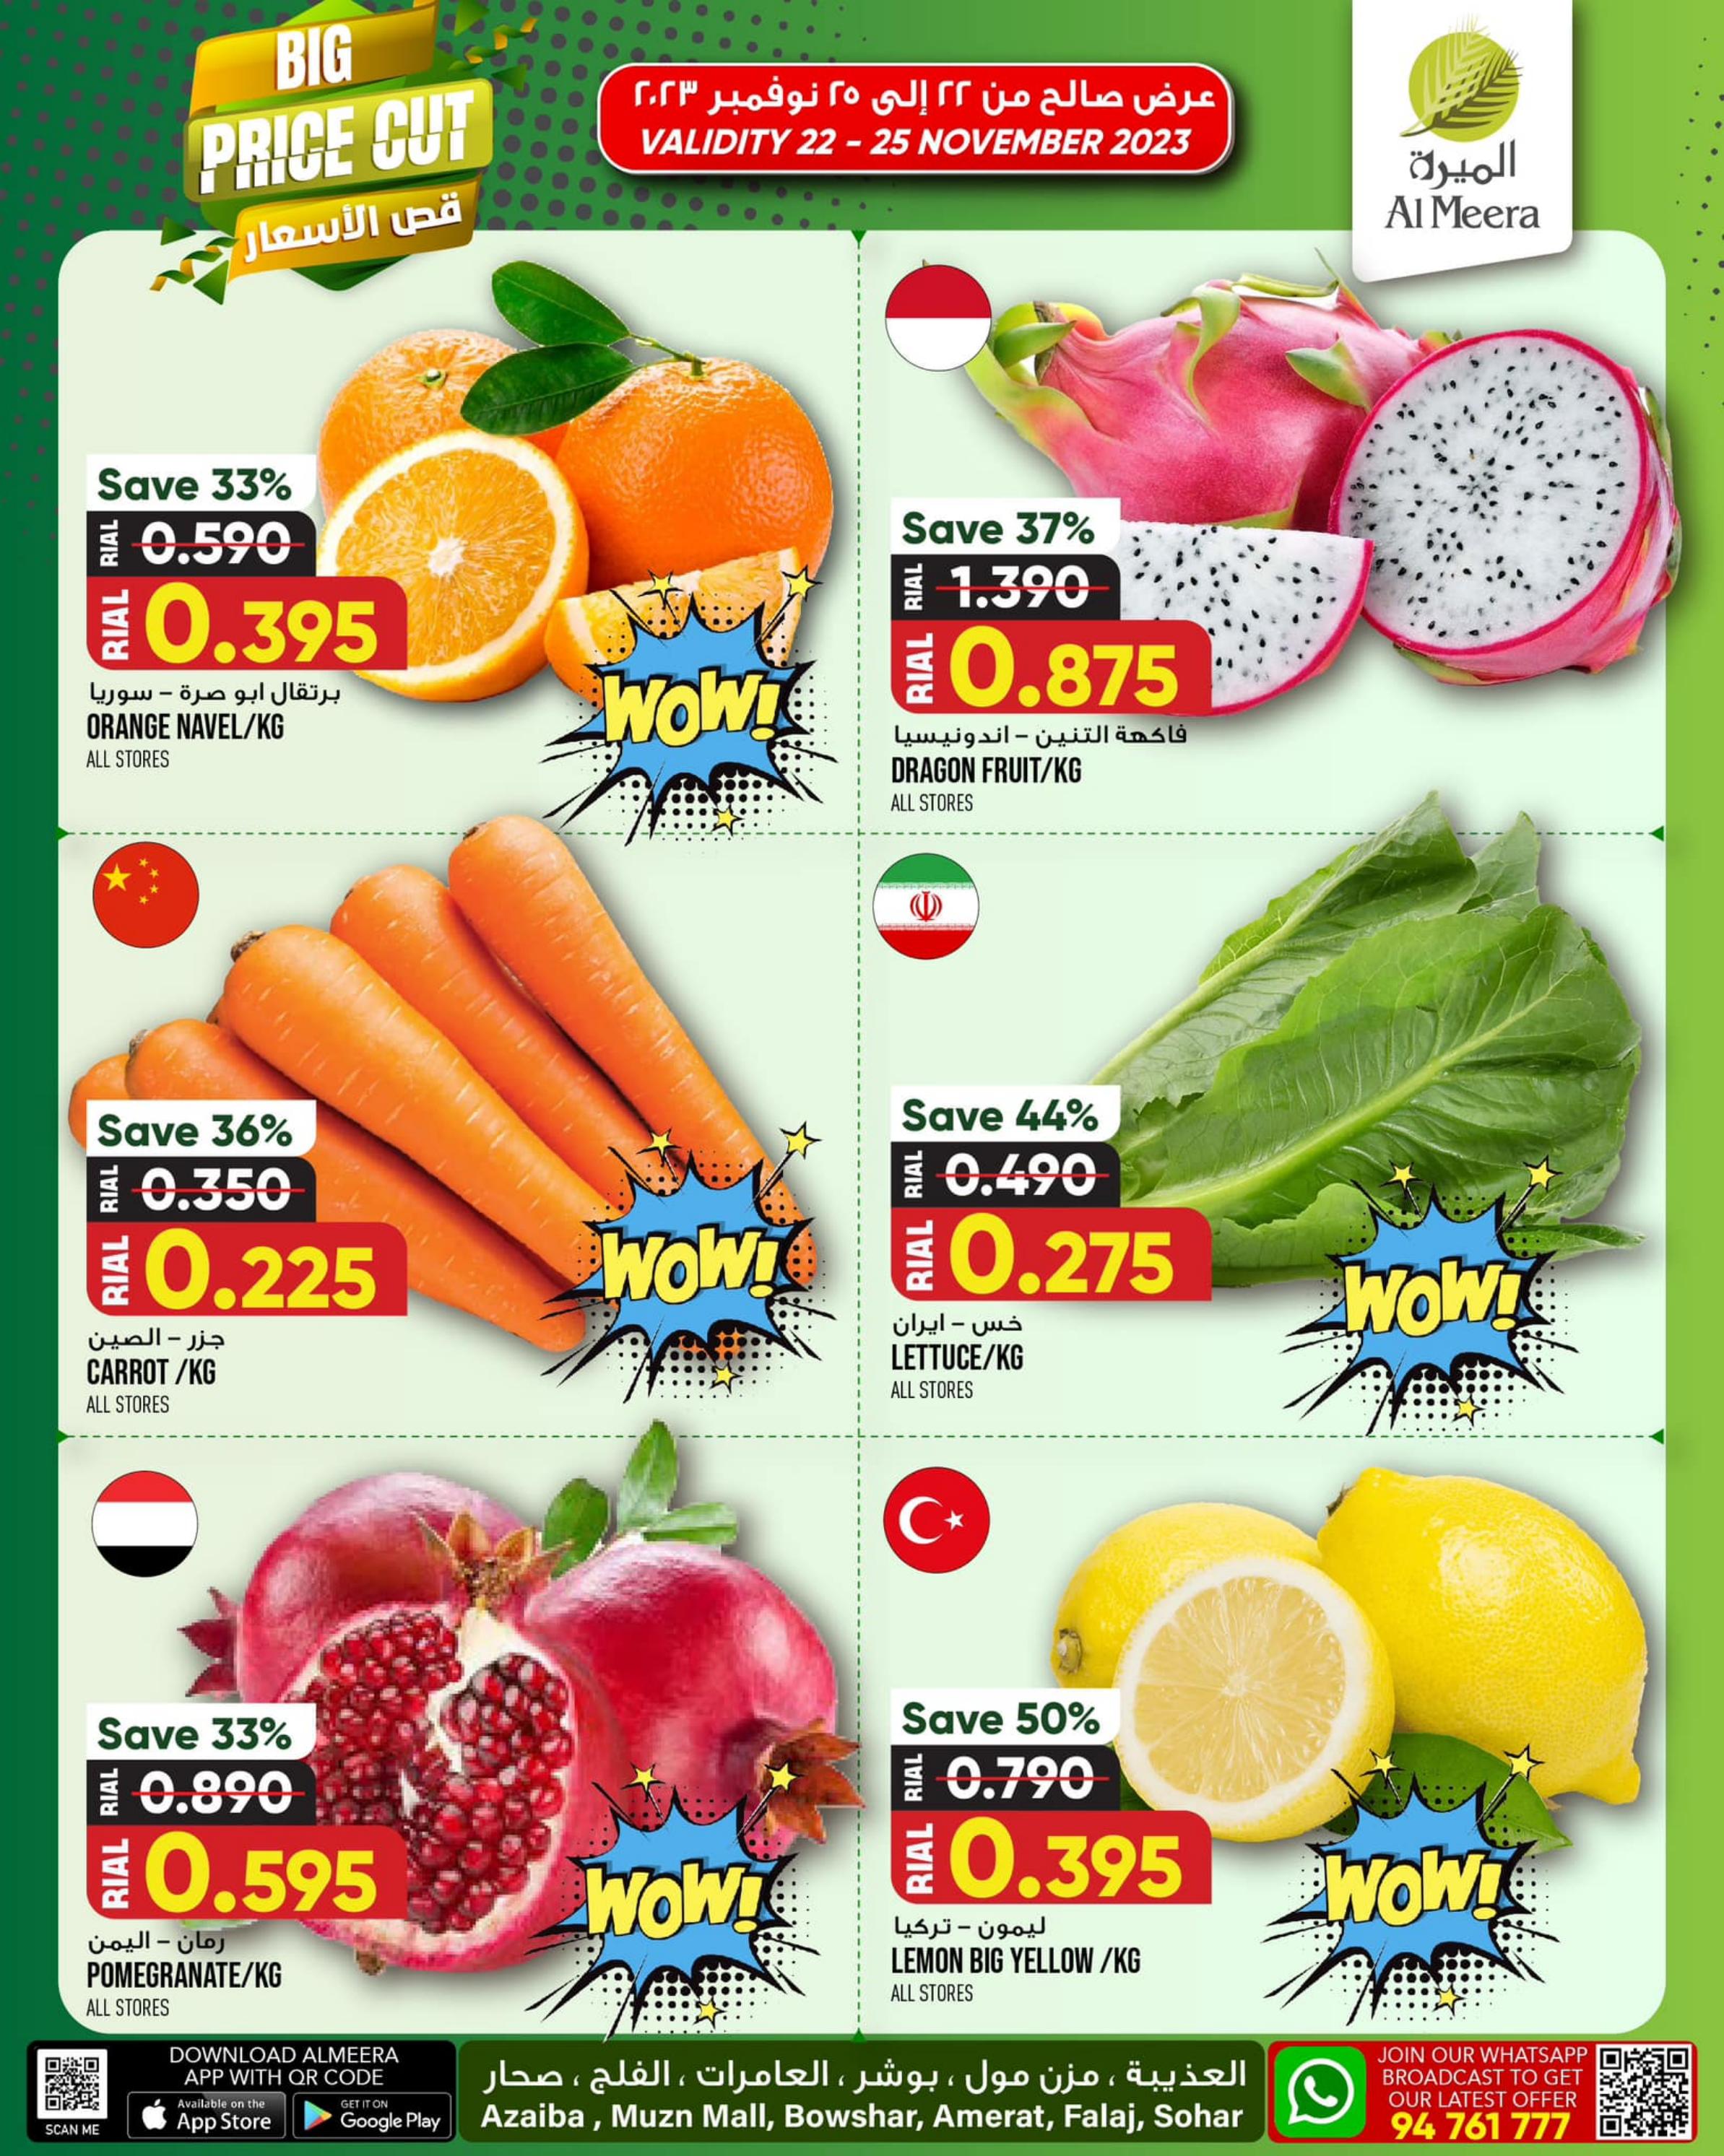 Page 2 at Big Price Cut at Al Meera Oman